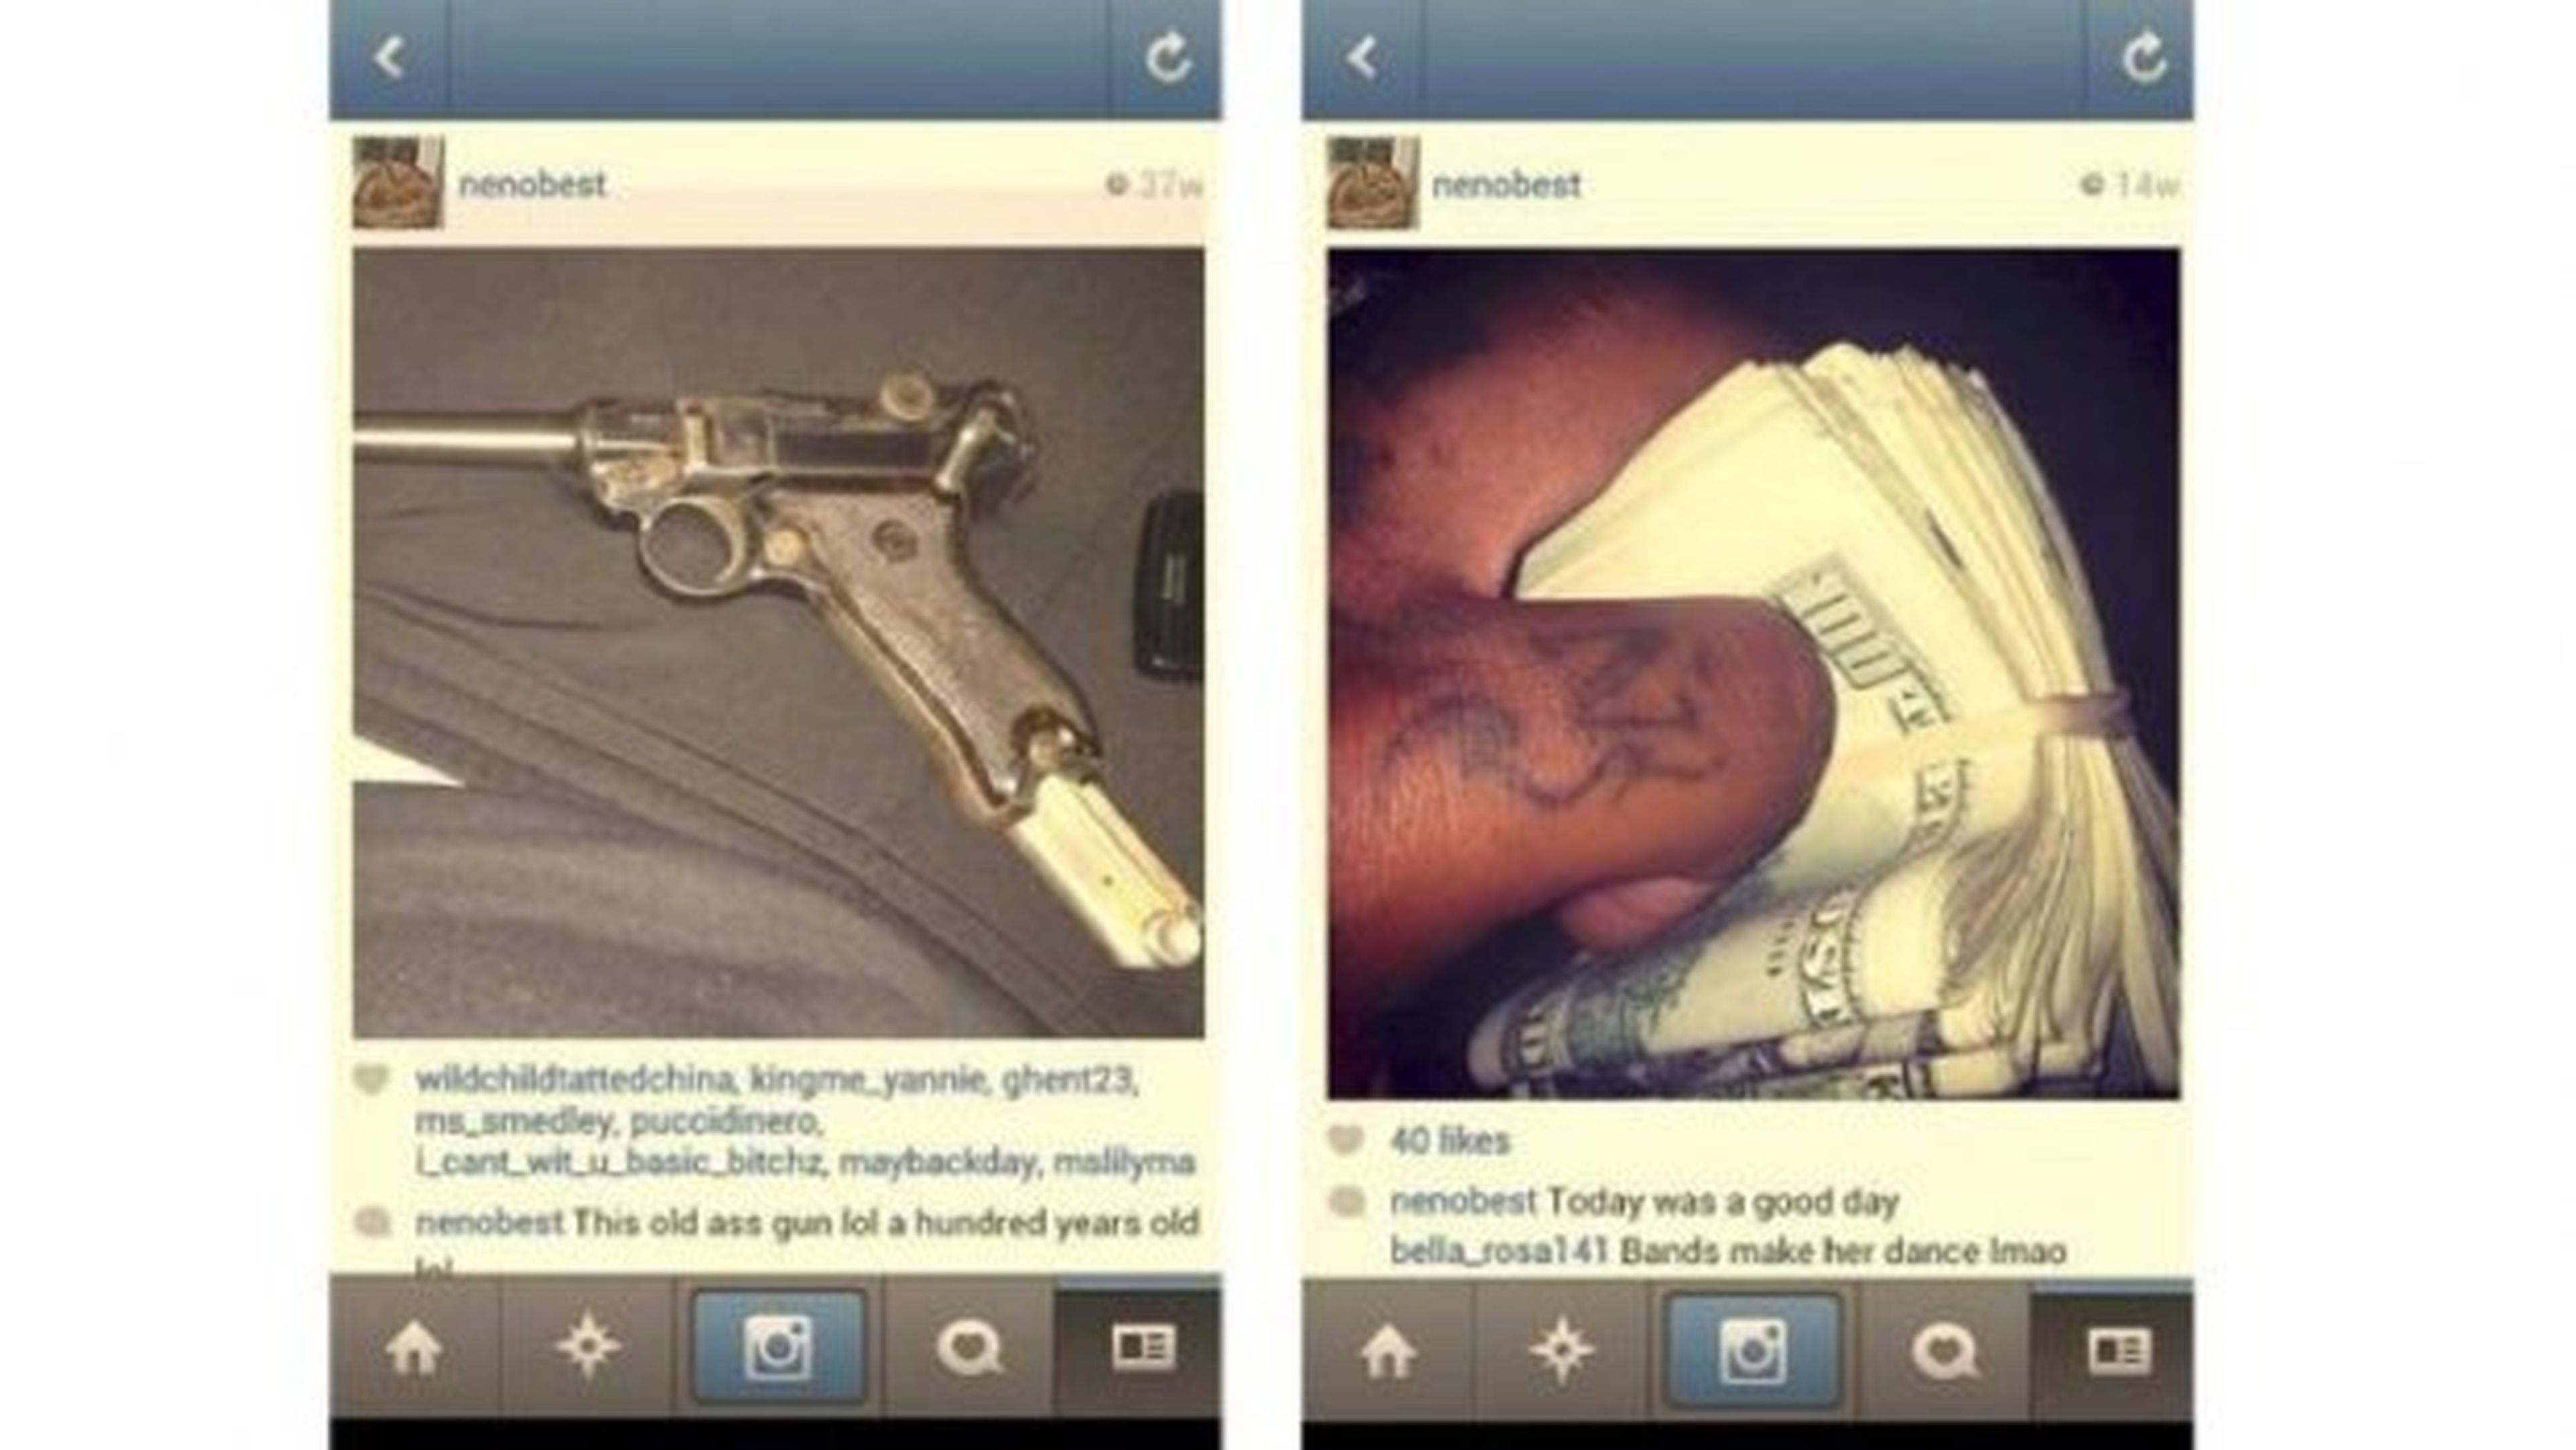 Instagram posibilita la mayor incautación de armas en NY